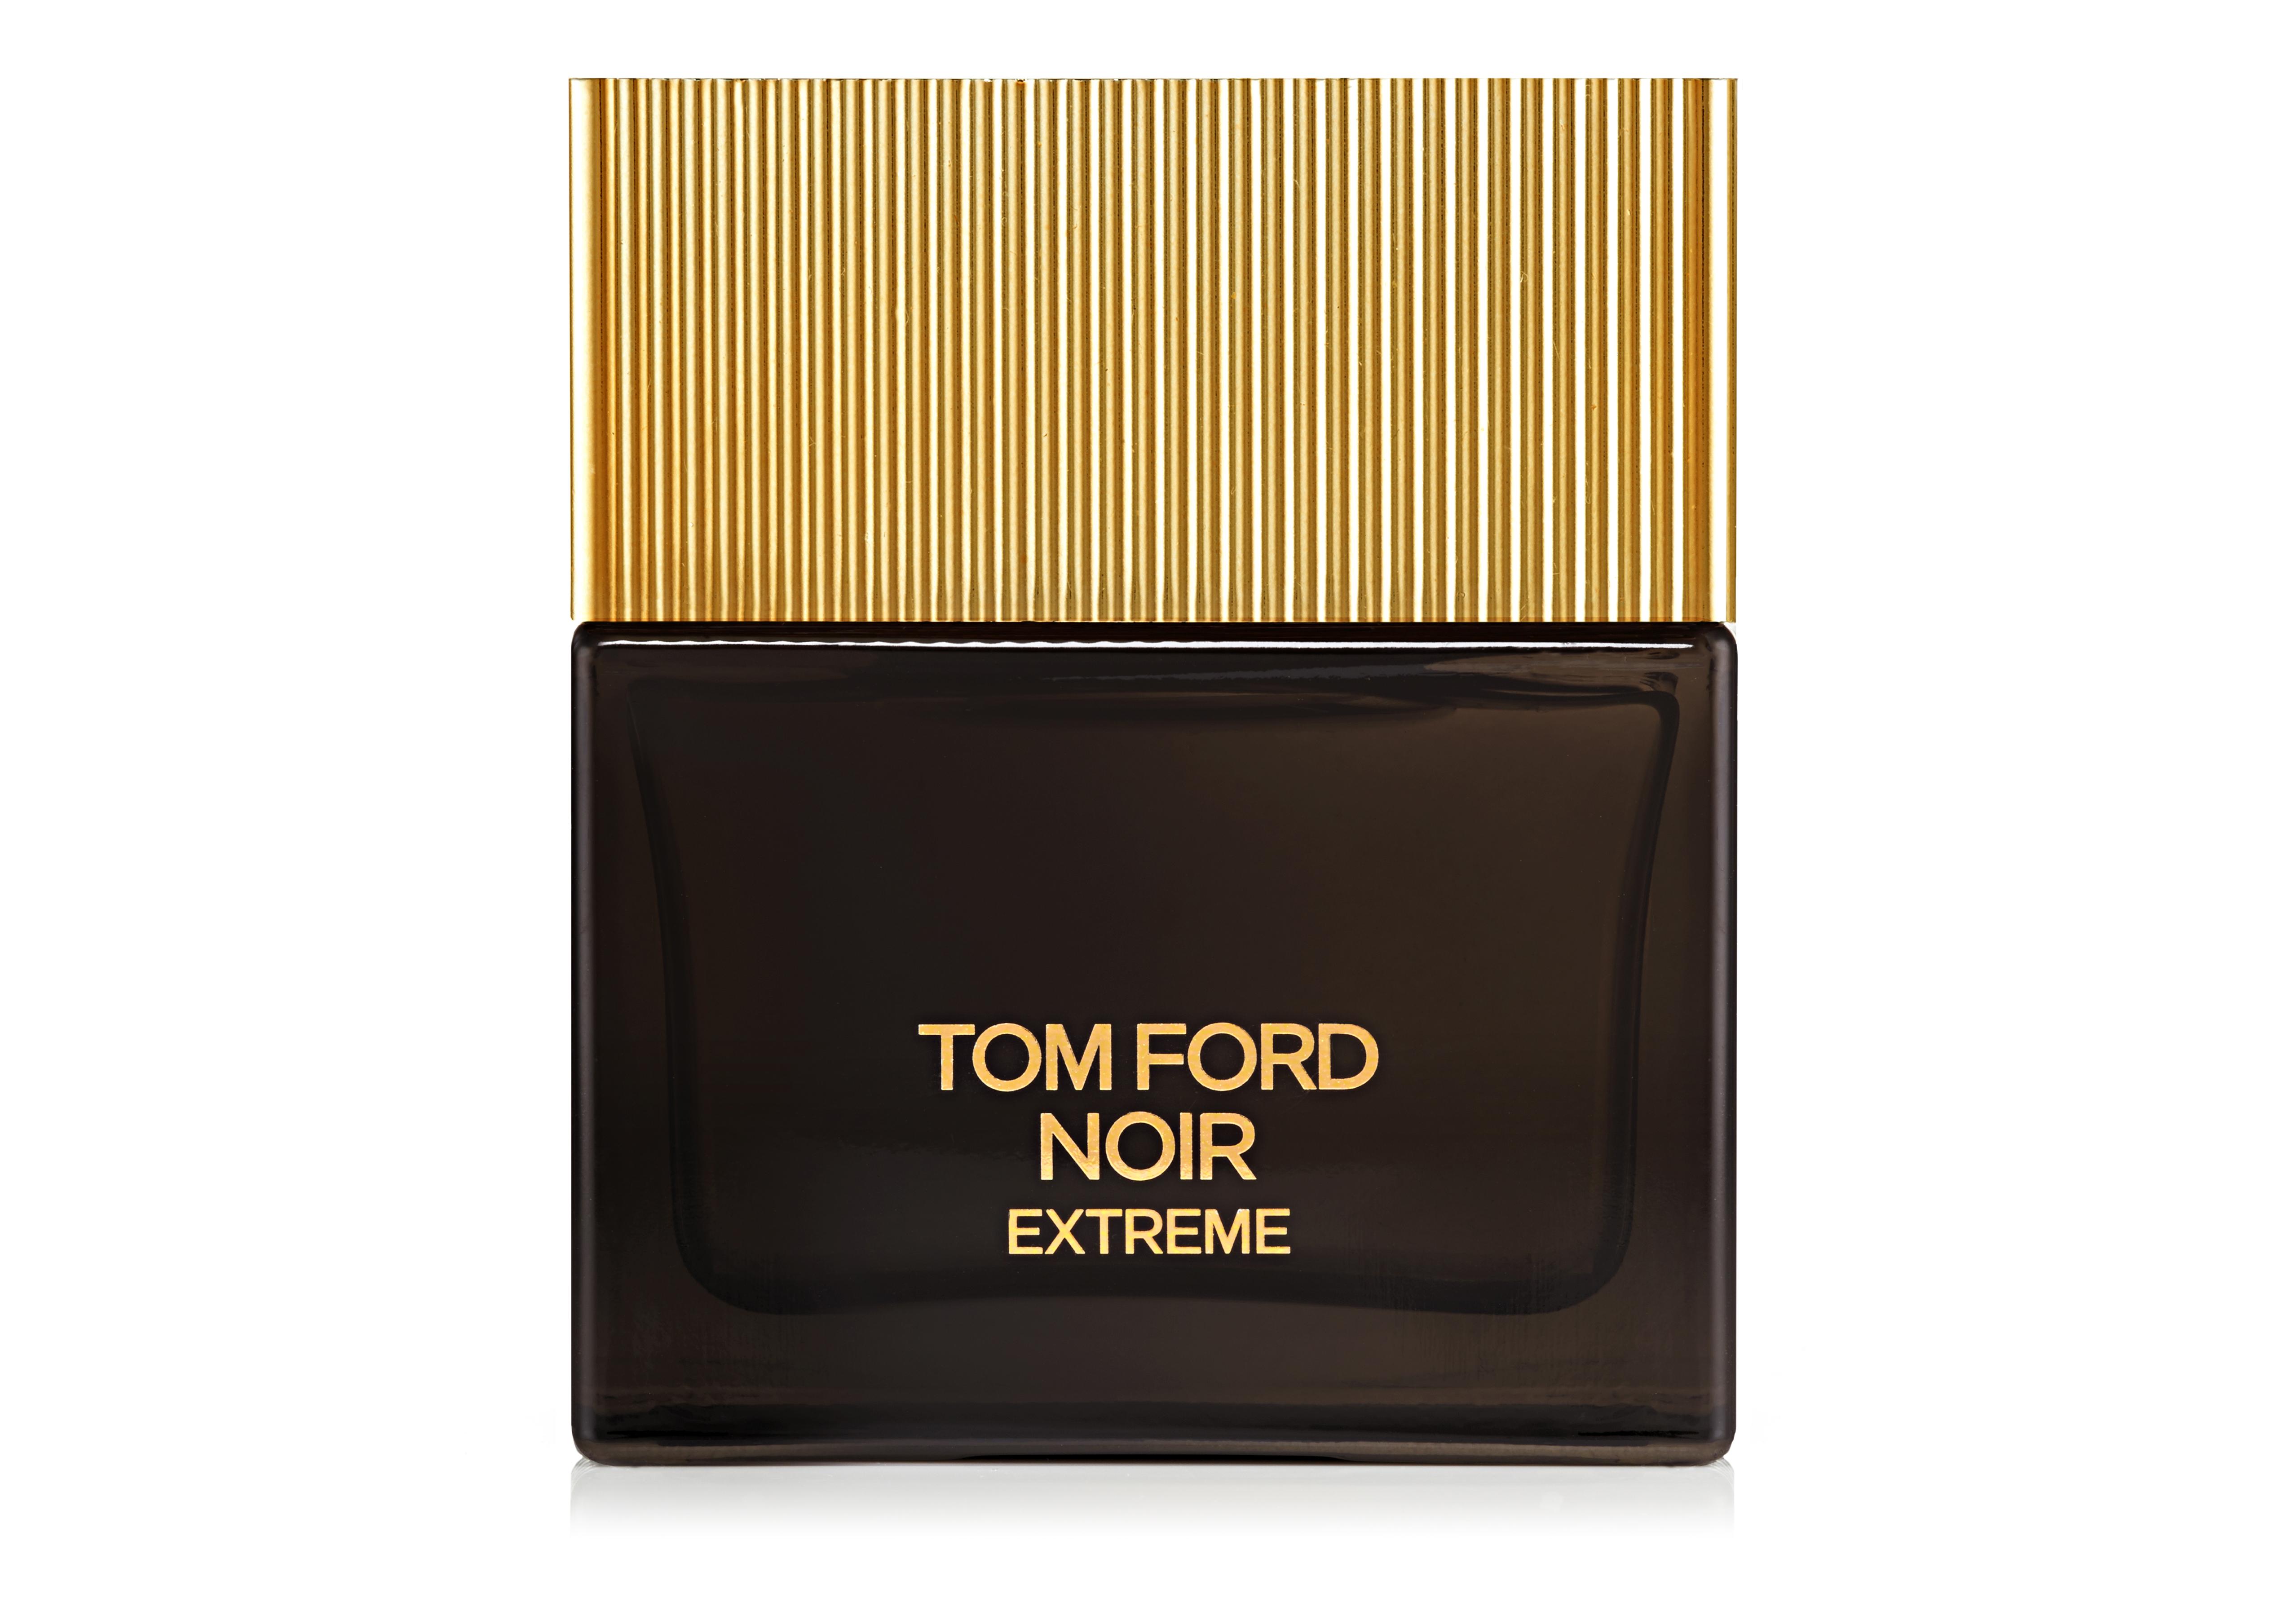 Tom Ford TOM FORD NOIR EXTREME EAU DE PARFUM | TomFord.co.uk